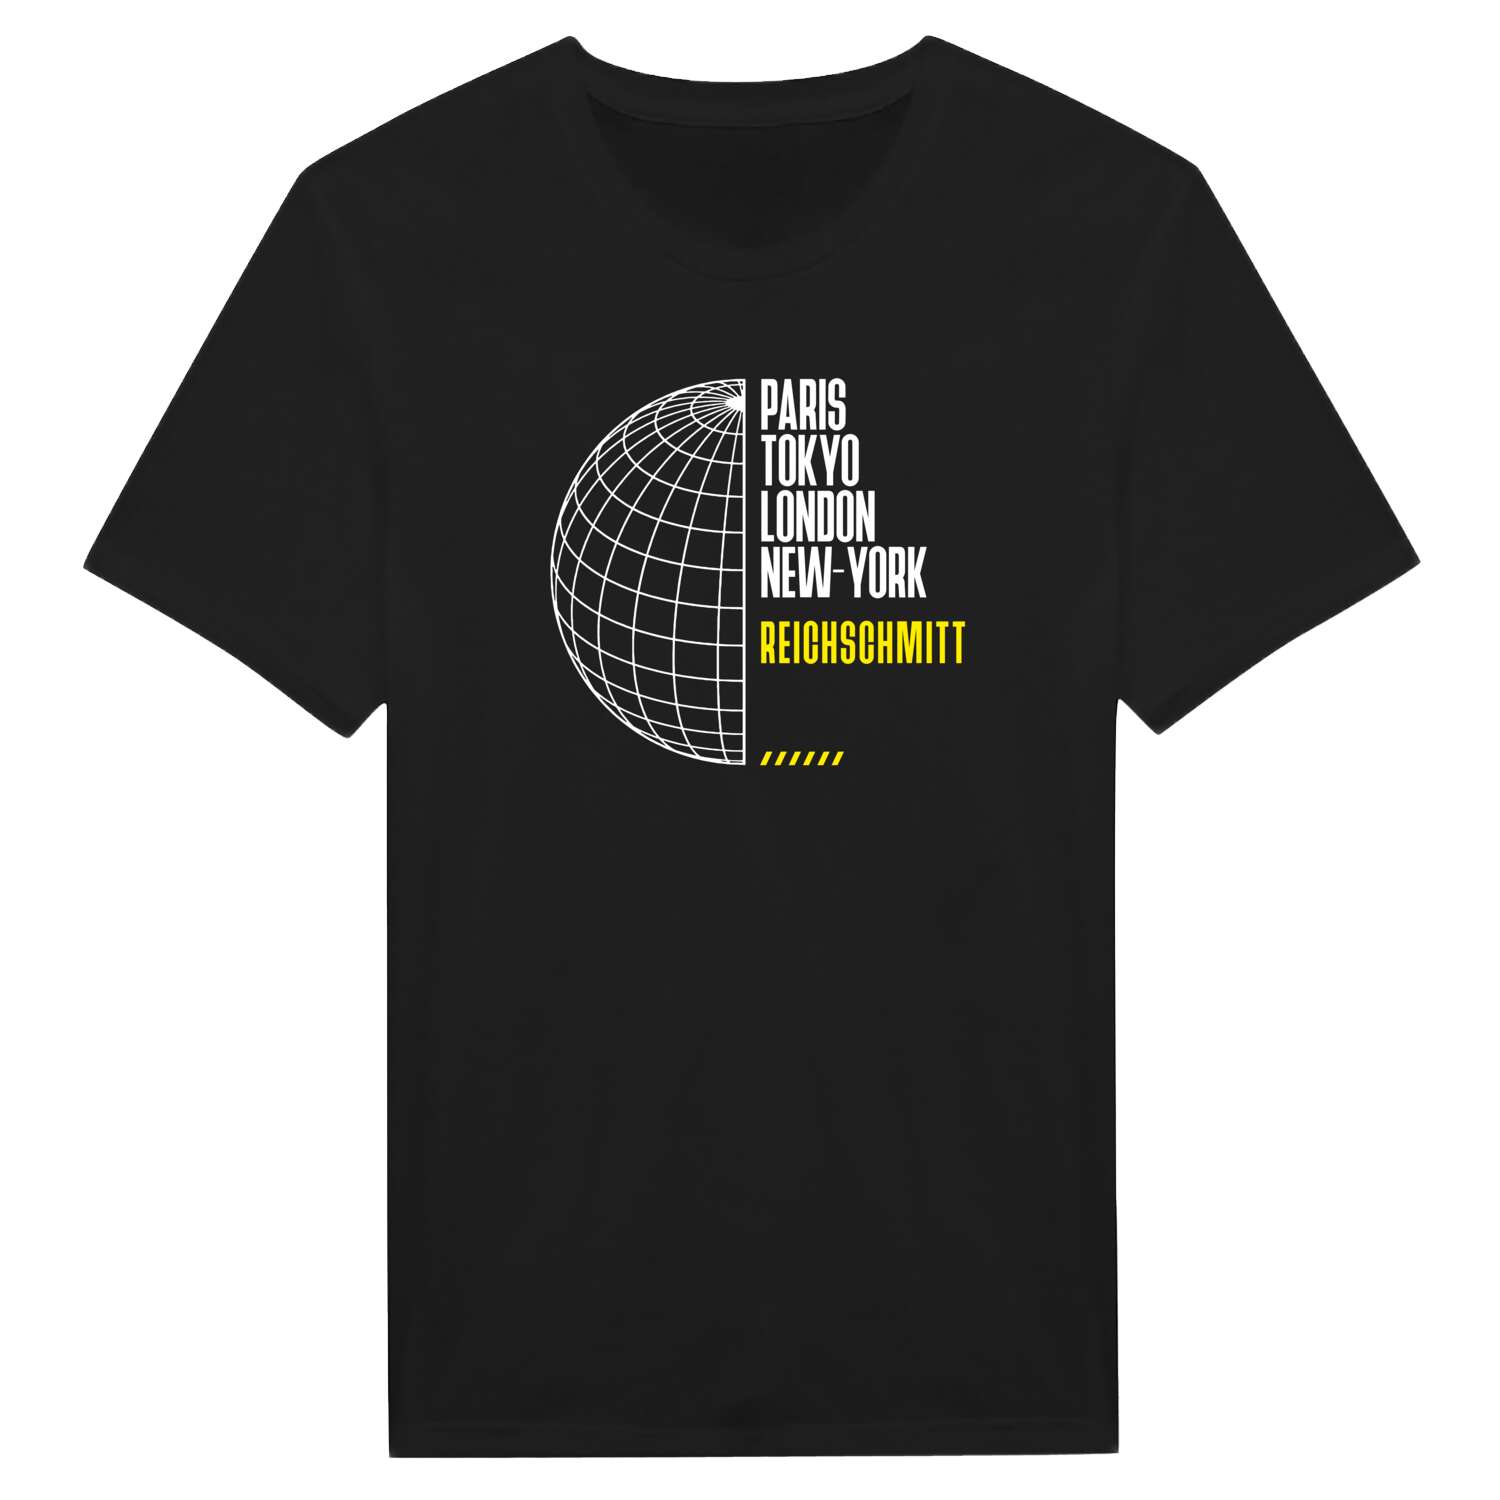 Reichschmitt T-Shirt »Paris Tokyo London«